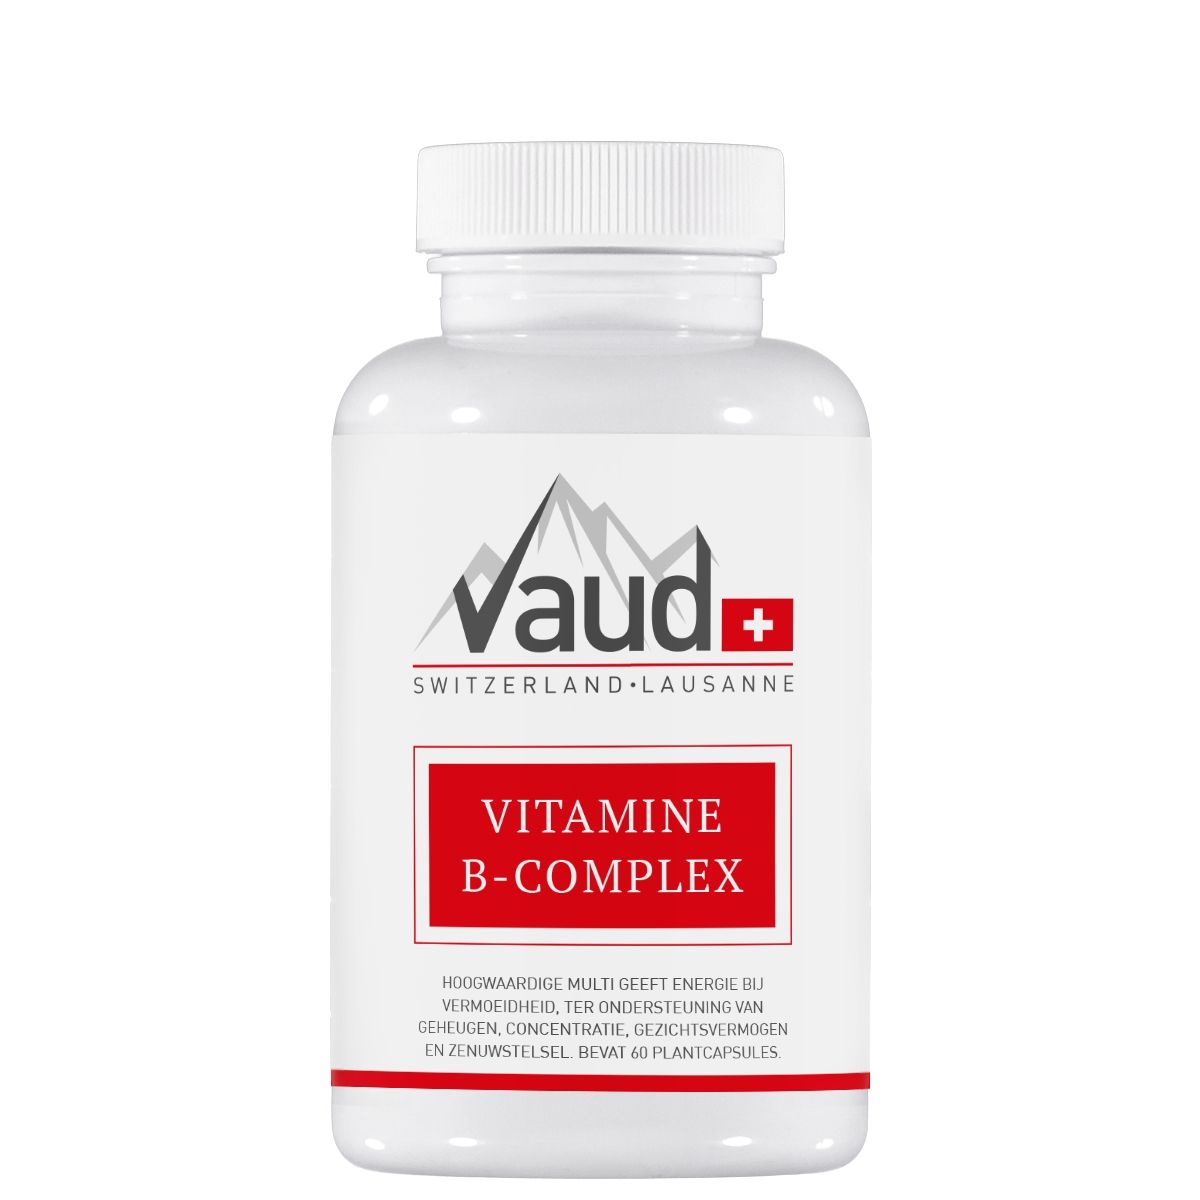 bladzijde verkoper Overblijvend Vitamine B Complex | Hoge dosering en Zwitserse kwaliteit - Vaud